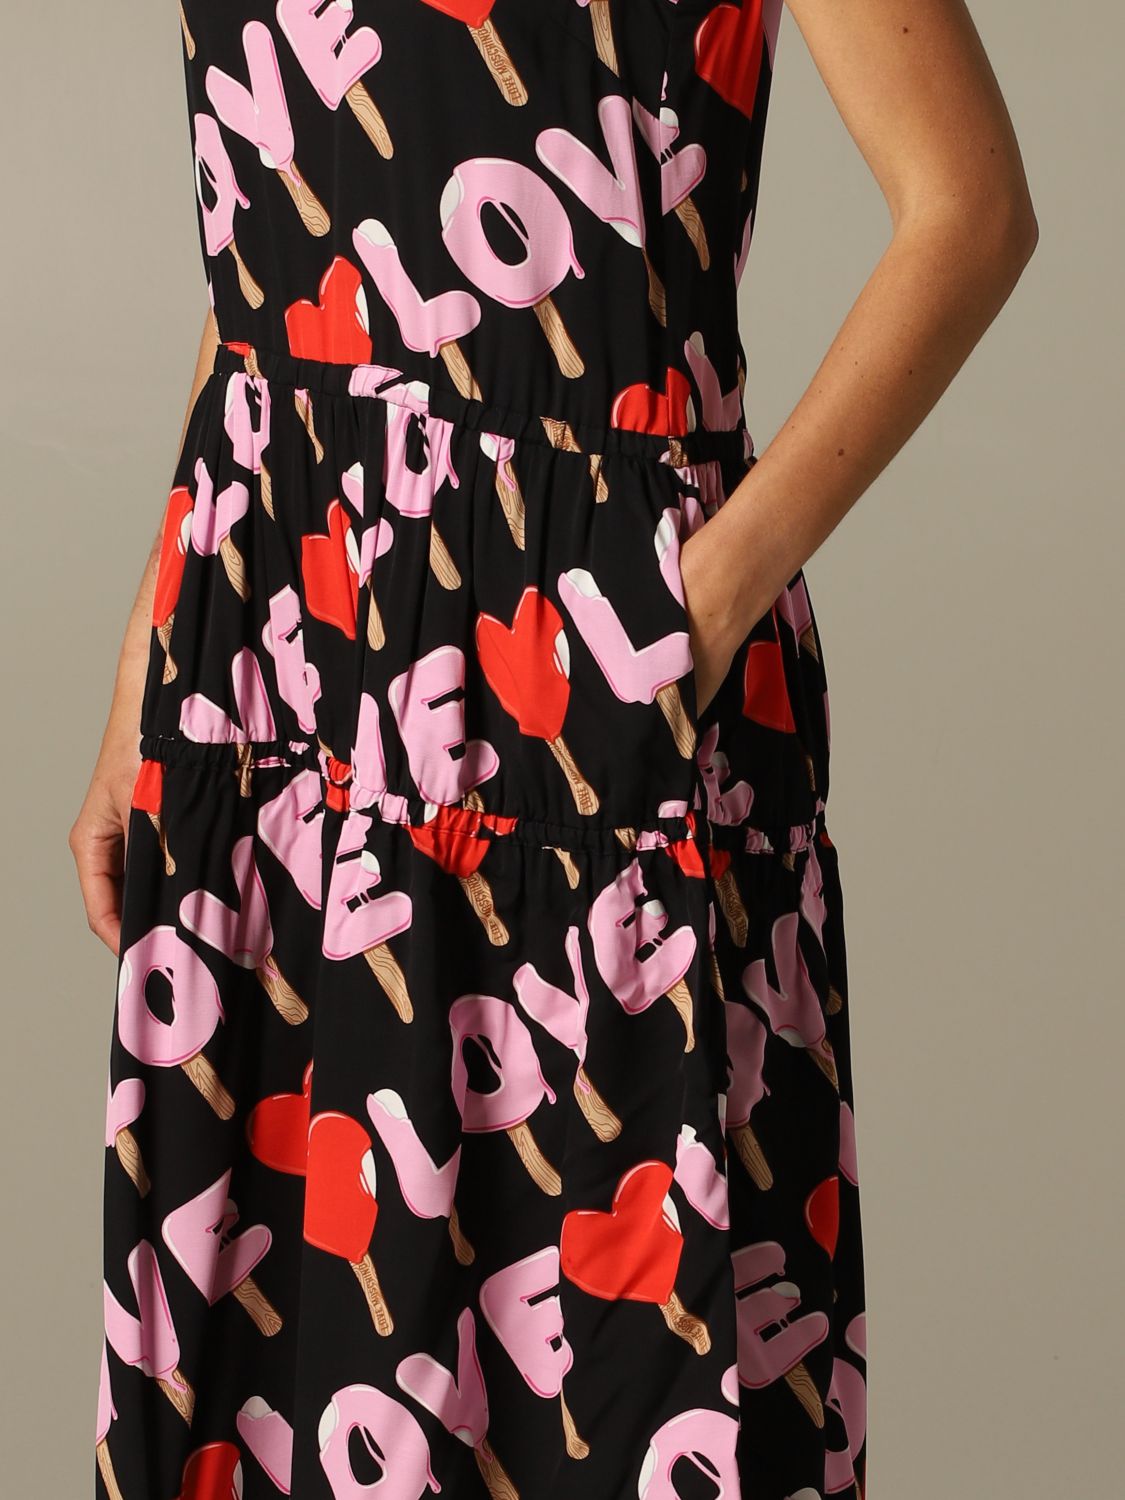 love moschino dress